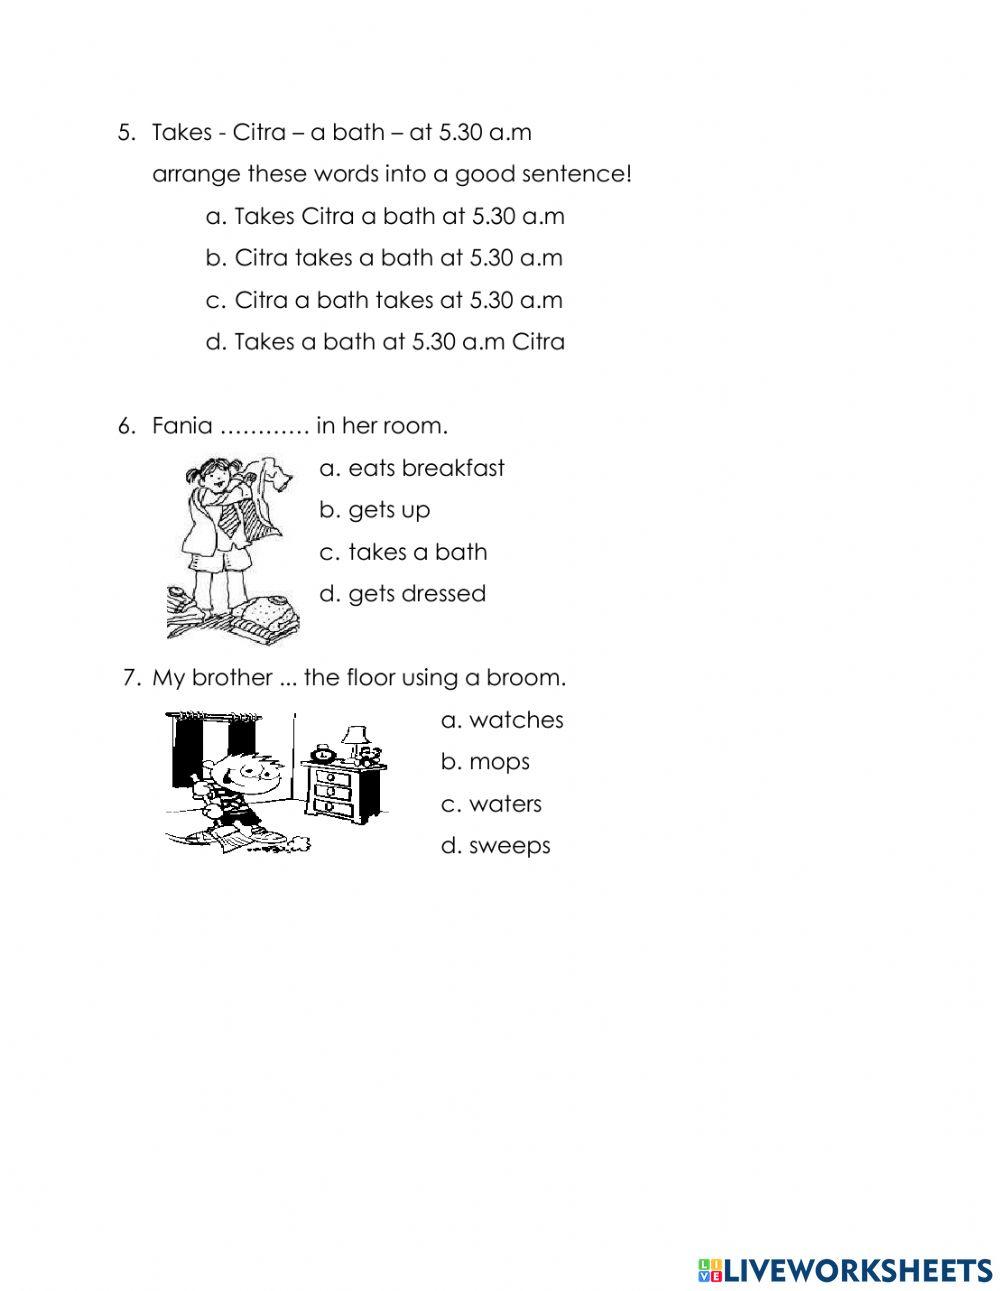 Latihan pts genap bahasa inggris kelas 4